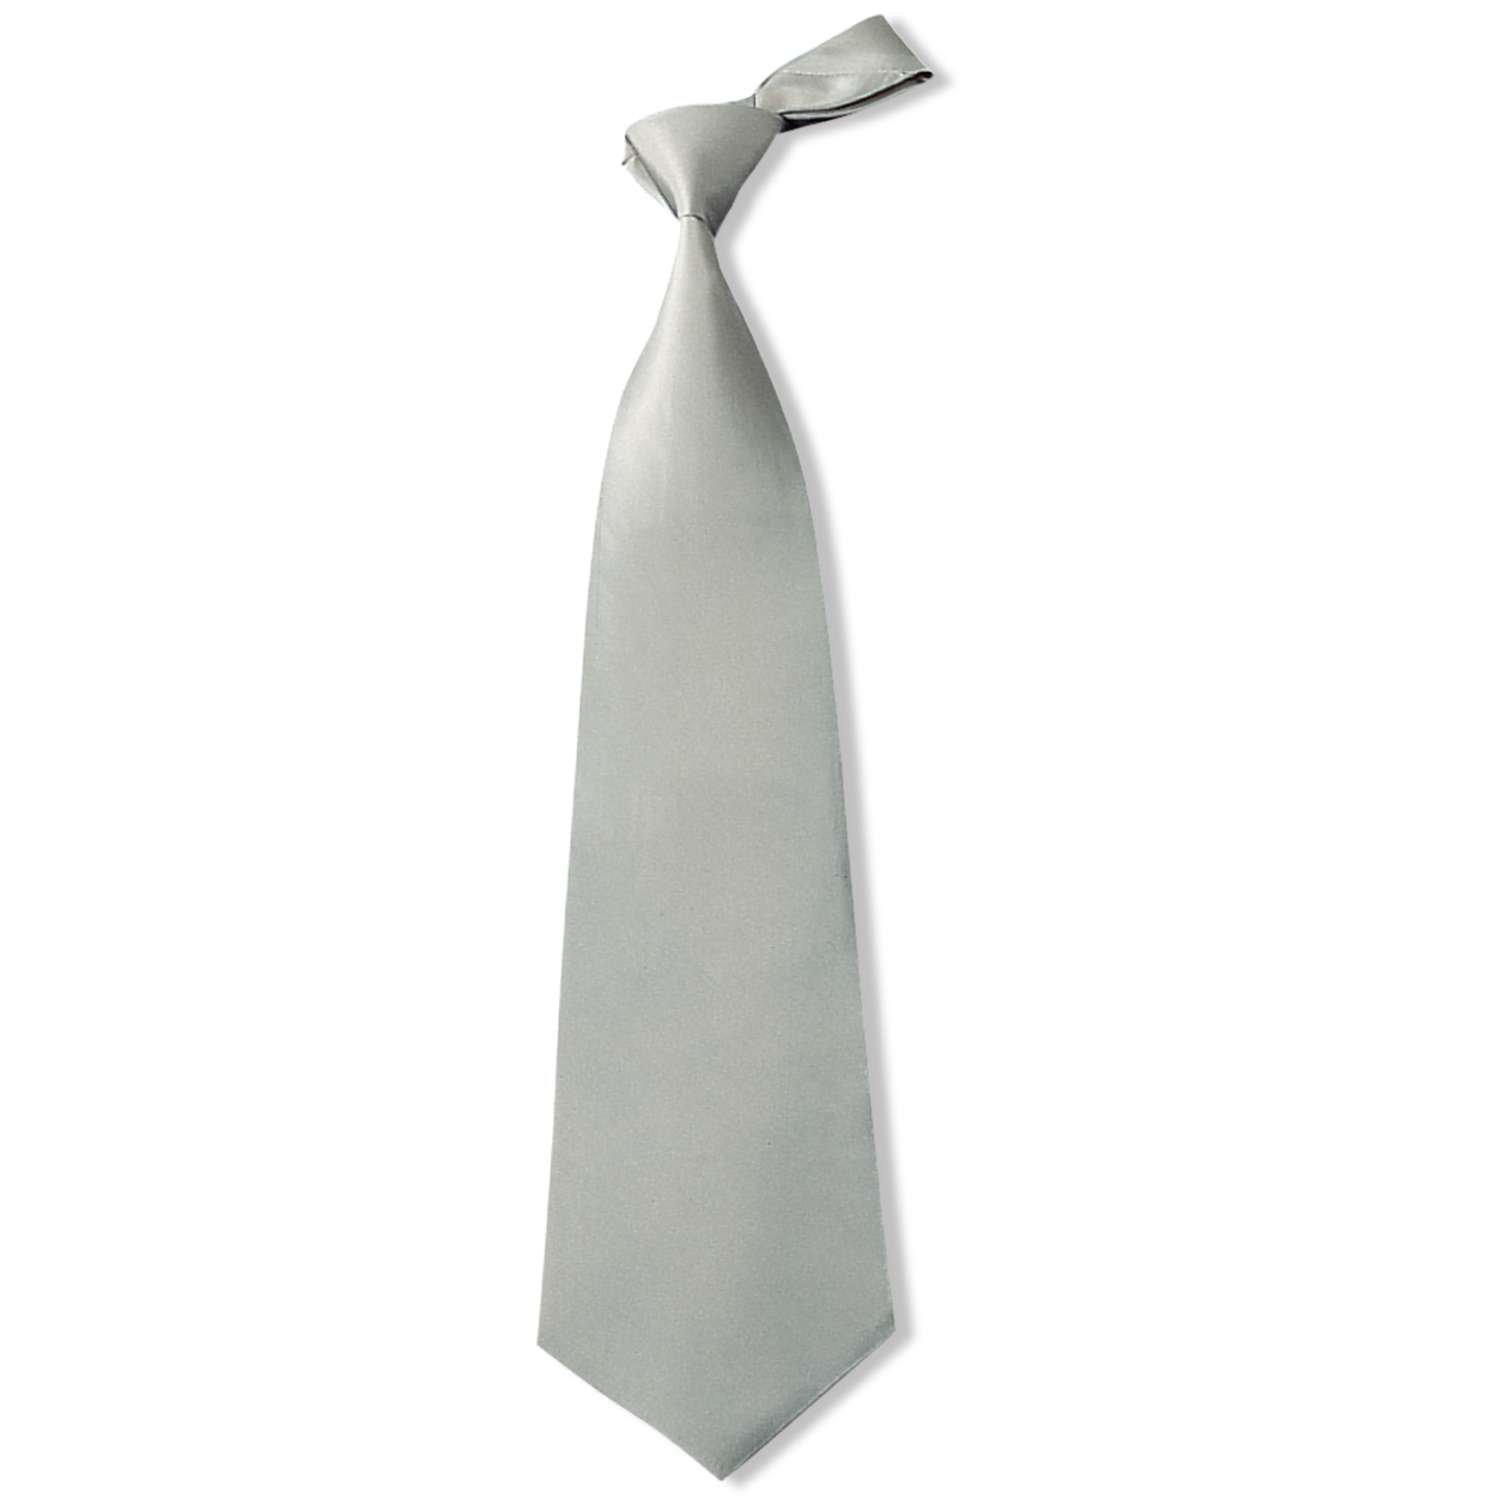 Rand Aanhoudend niemand IDEEN zijden stropdas